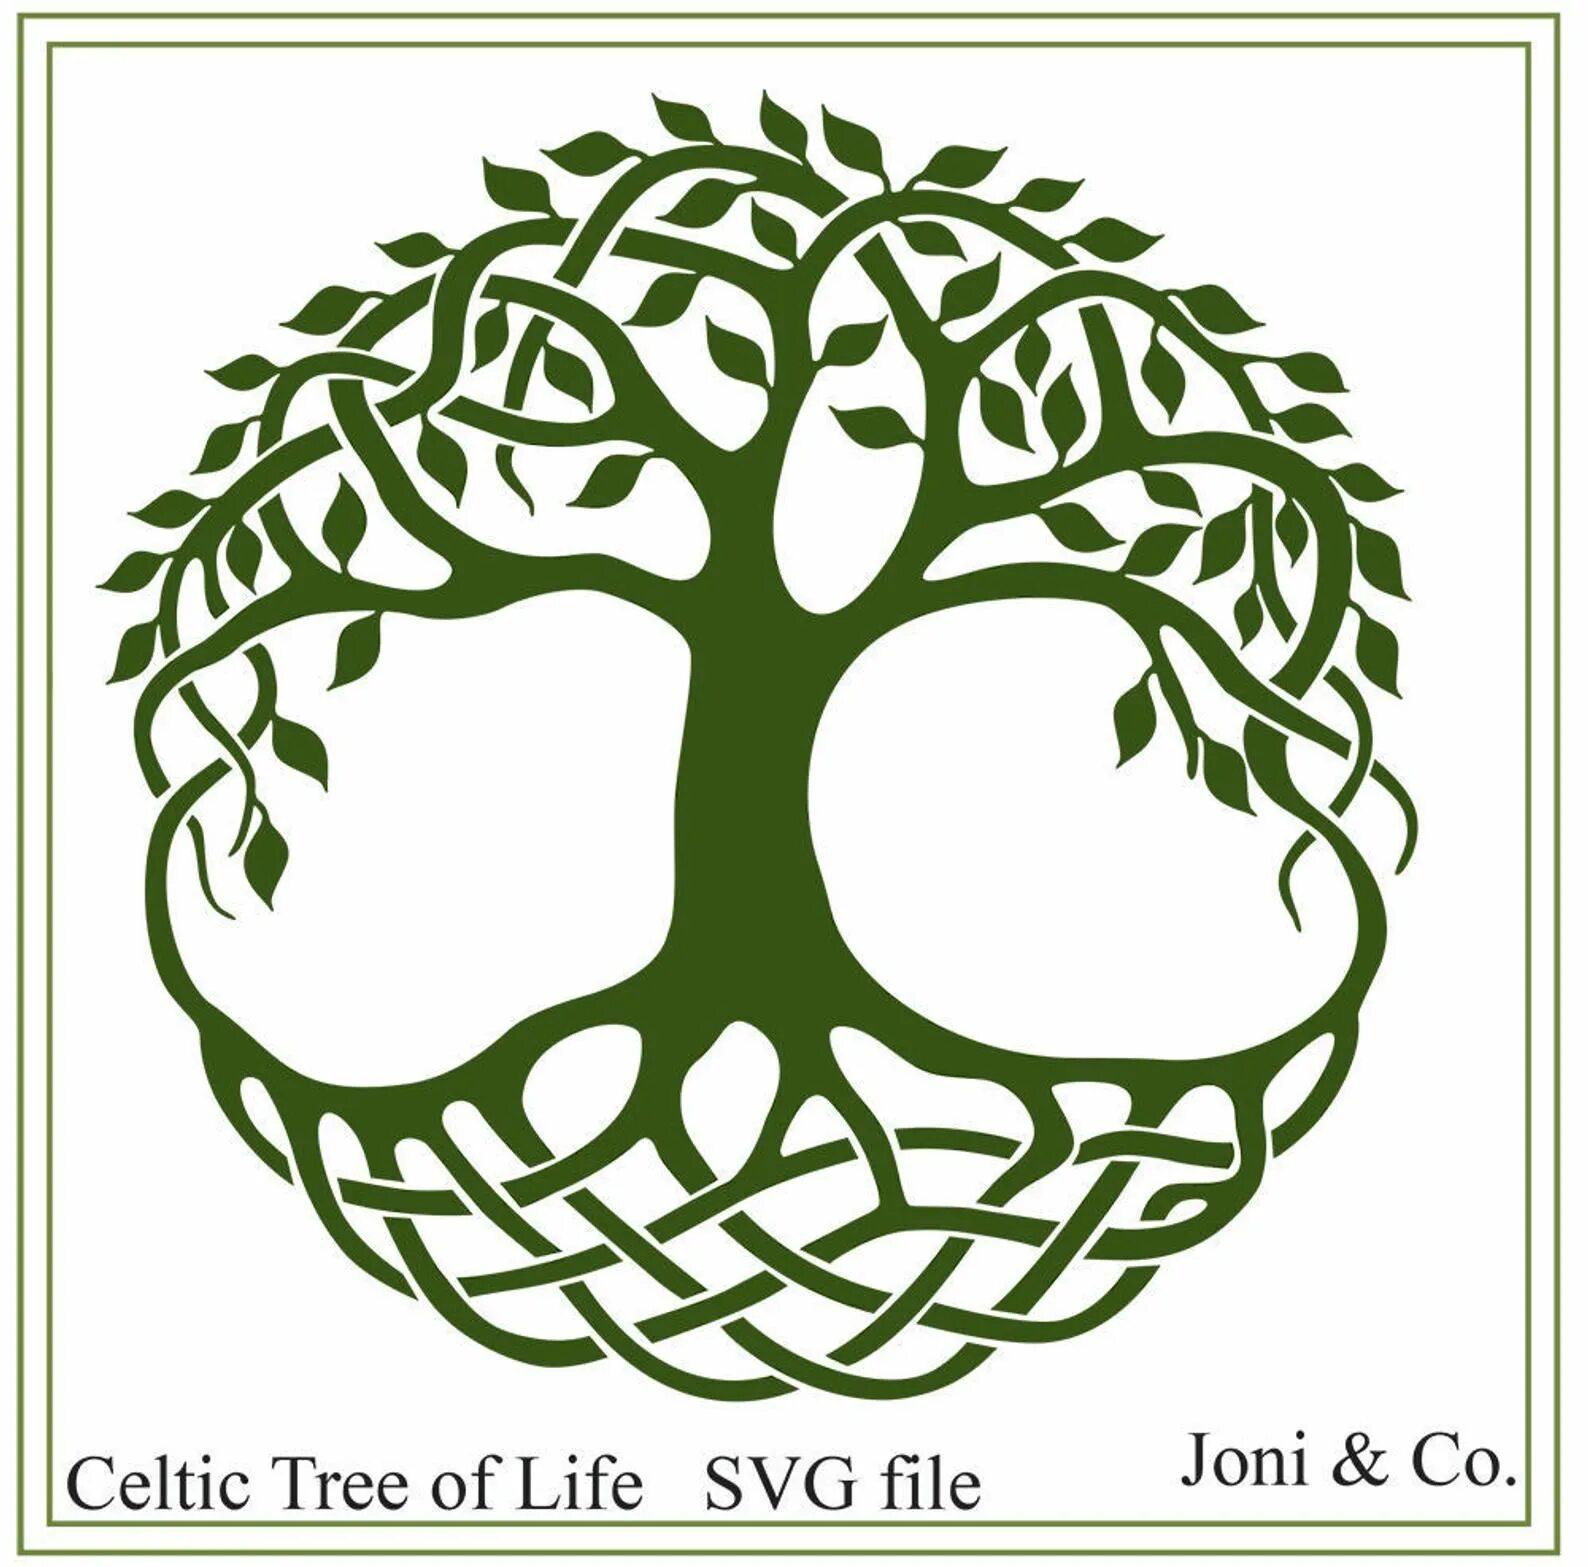 Три дерева символ. Кельтское Древо жизни. "Tree of Life" ("дерево жизни") by degree. Кельтское дерево жизни Иггдрасиль. Древо жизни Кельтский символ.